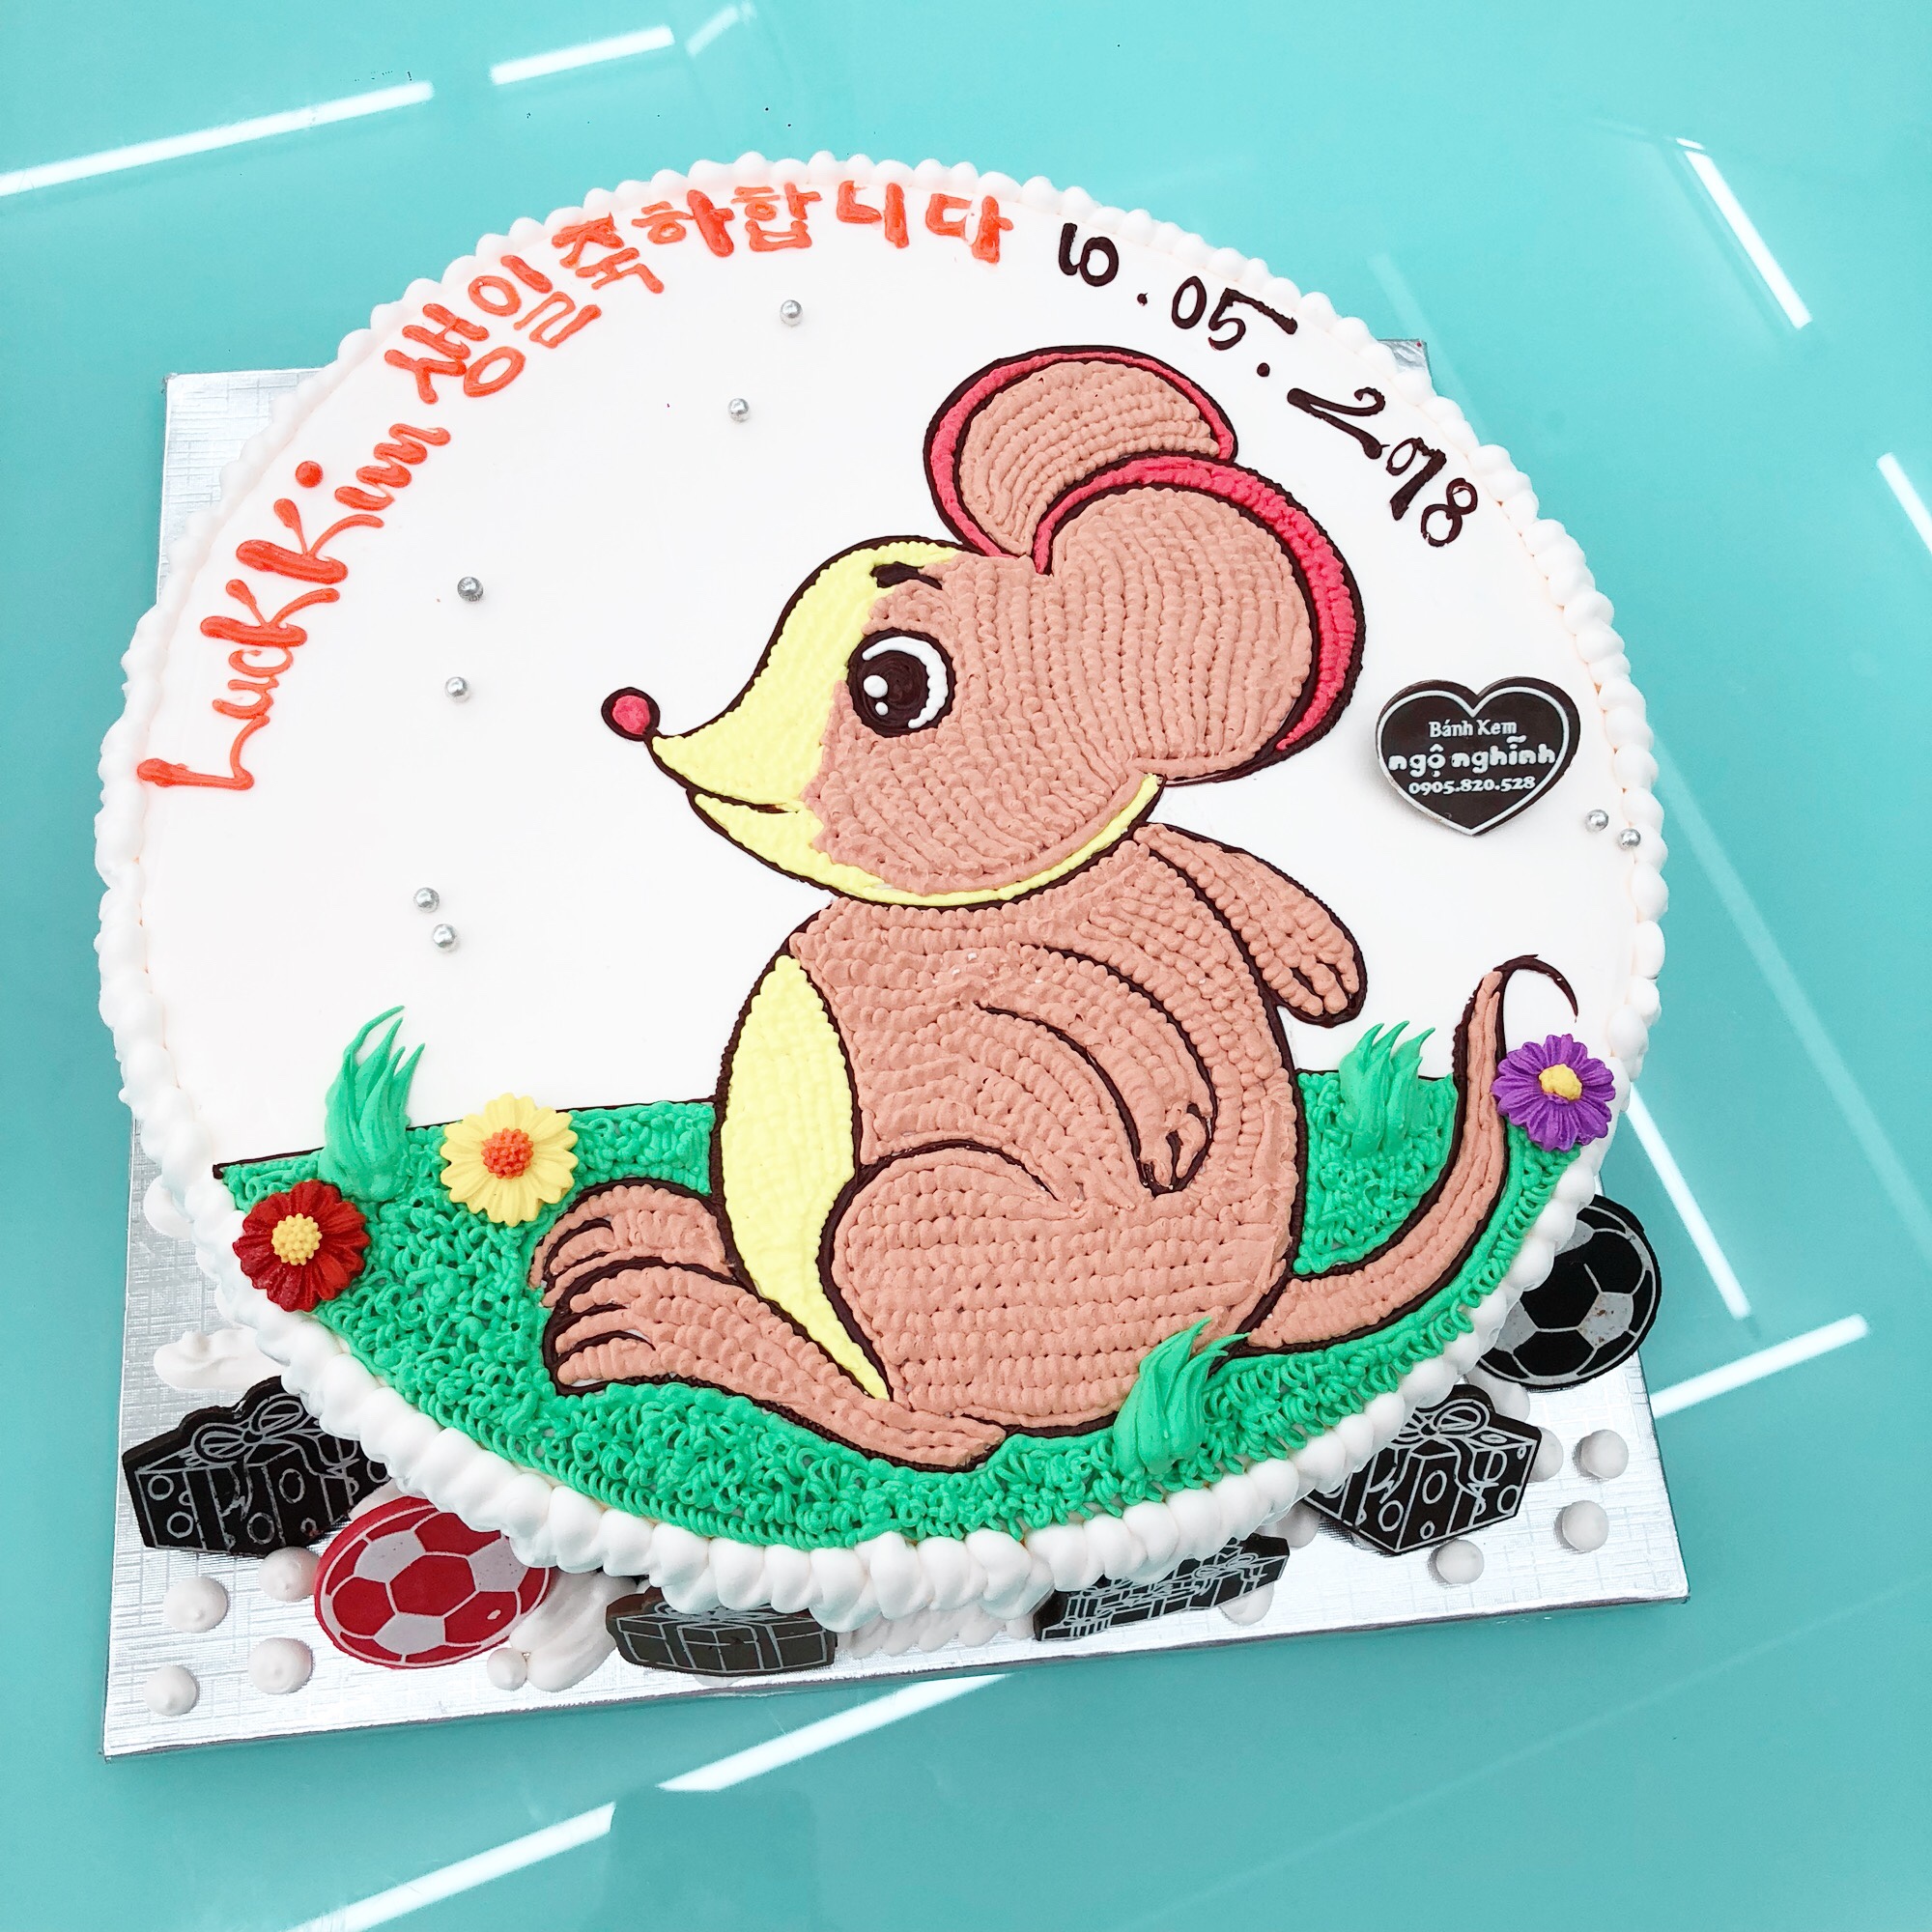 Một chiếc bánh sinh nhật đầy màu sắc hình con chuột tuổi tý ngộ nghĩnh đáng yêu chắc chắn sẽ làm hài lòng cả bé và người lớn. Hãy cùng chiêm ngưỡng vẻ đẹp tuyệt vời của chiếc bánh này nhé!